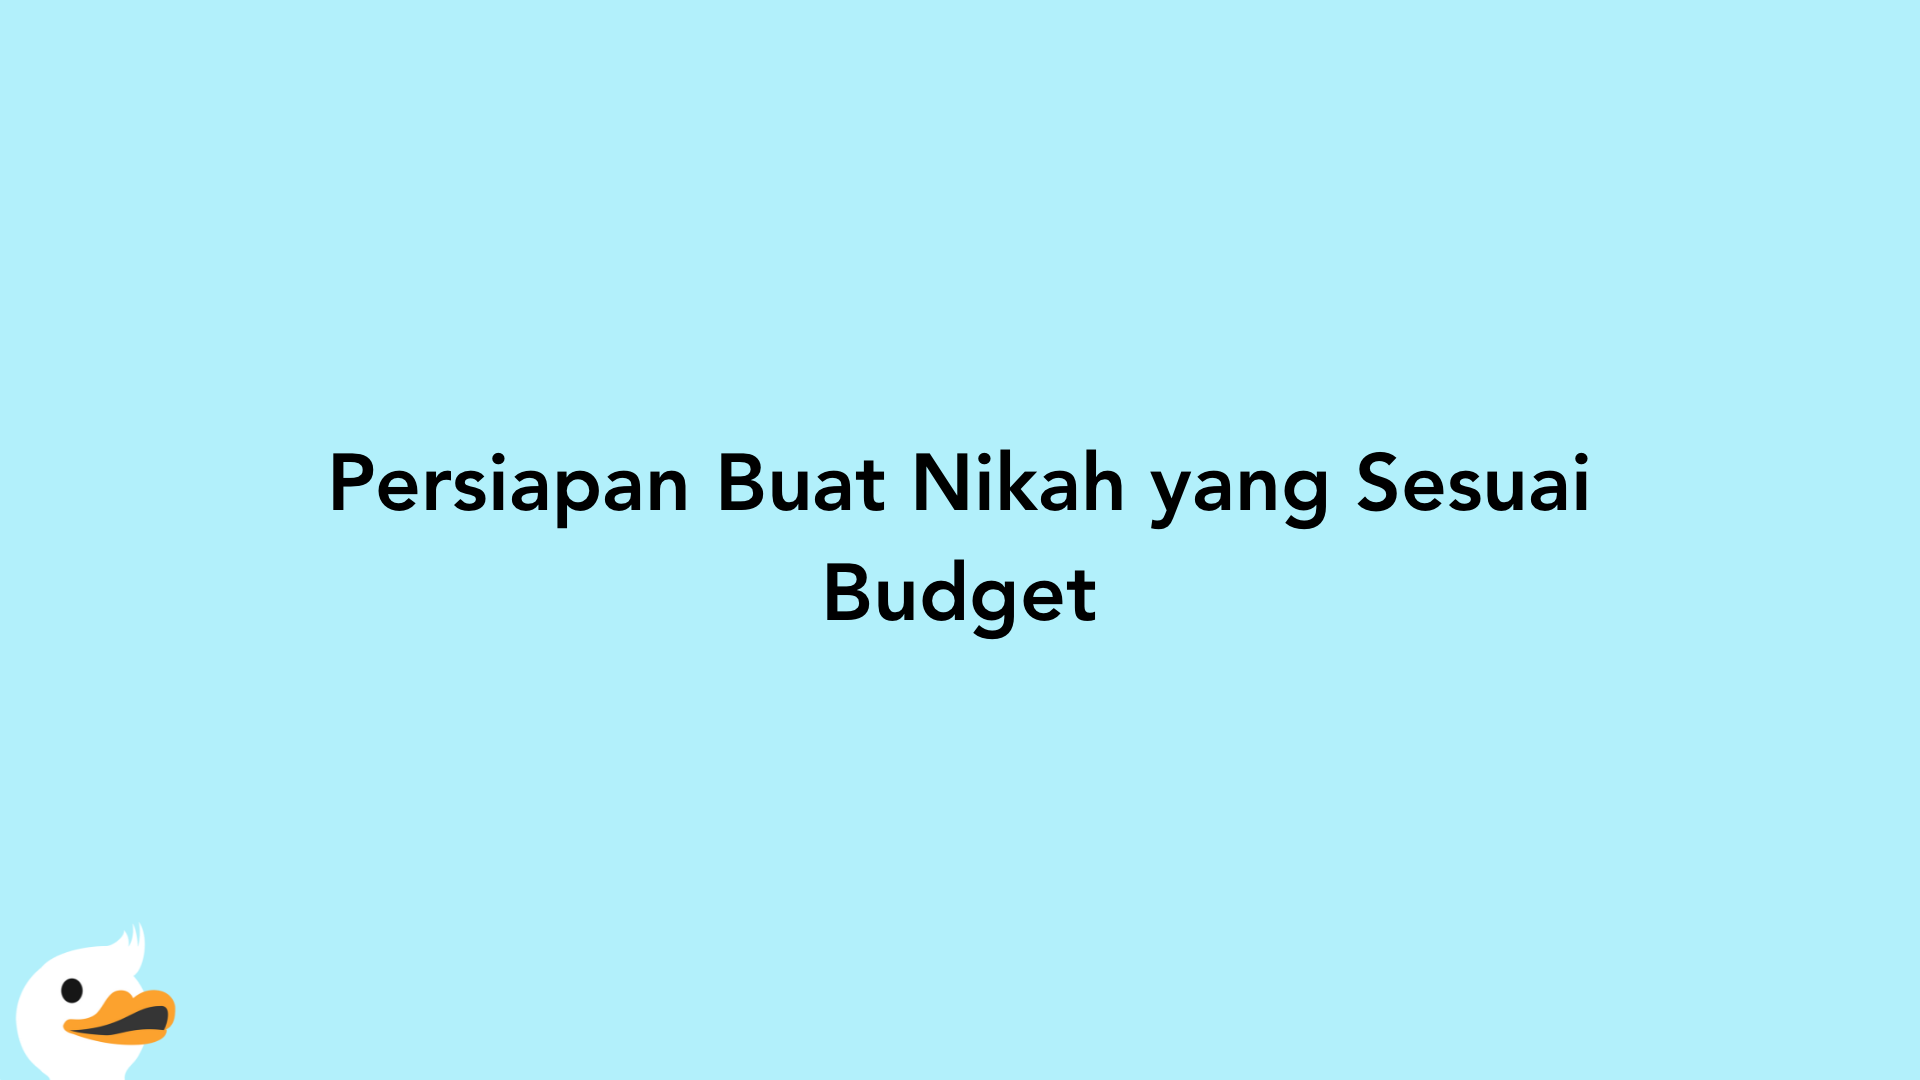 Persiapan Buat Nikah yang Sesuai Budget